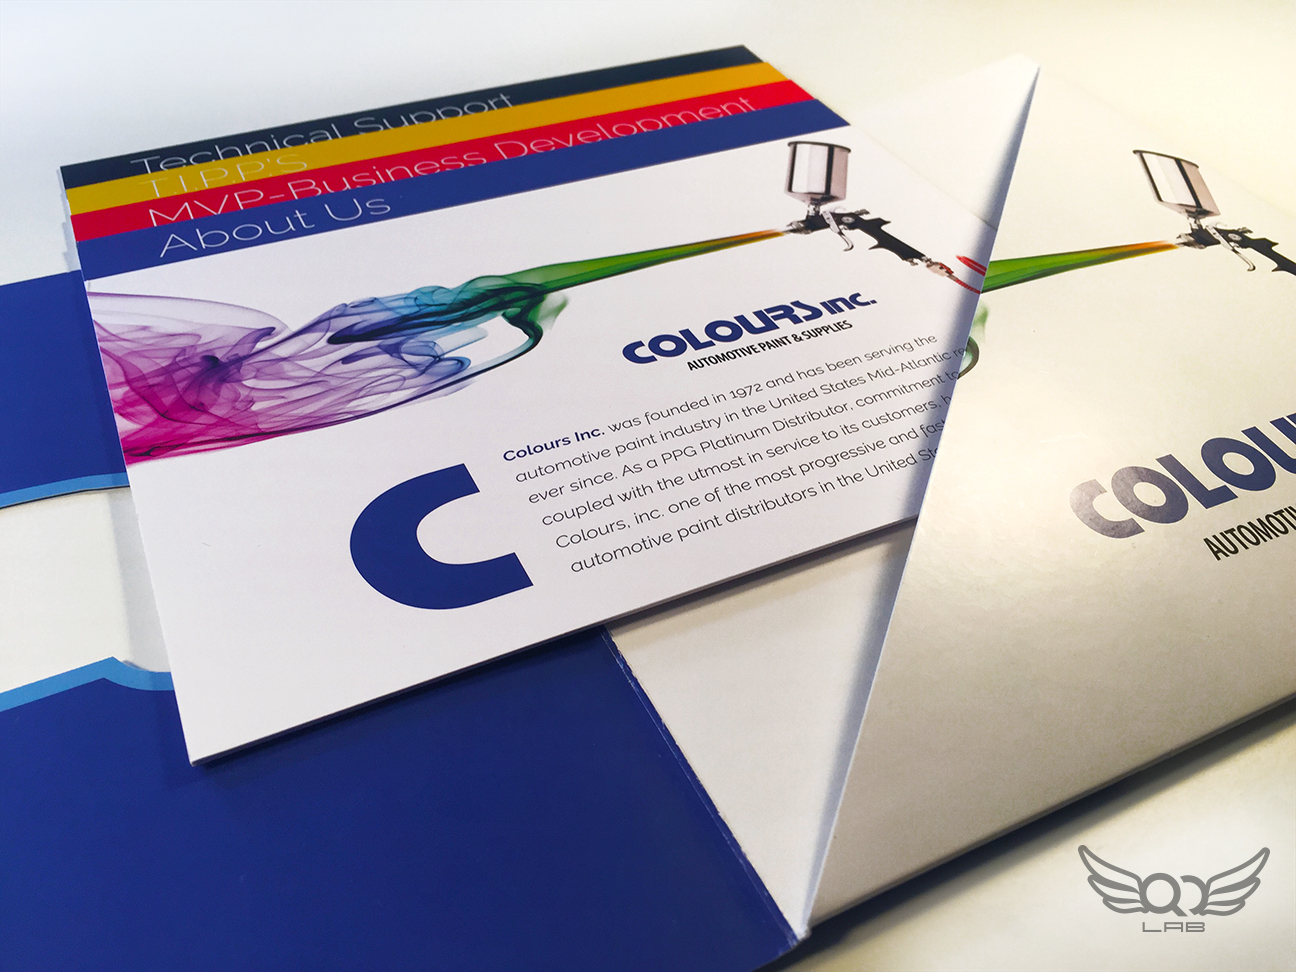 Colours, Inc. — Media Kit